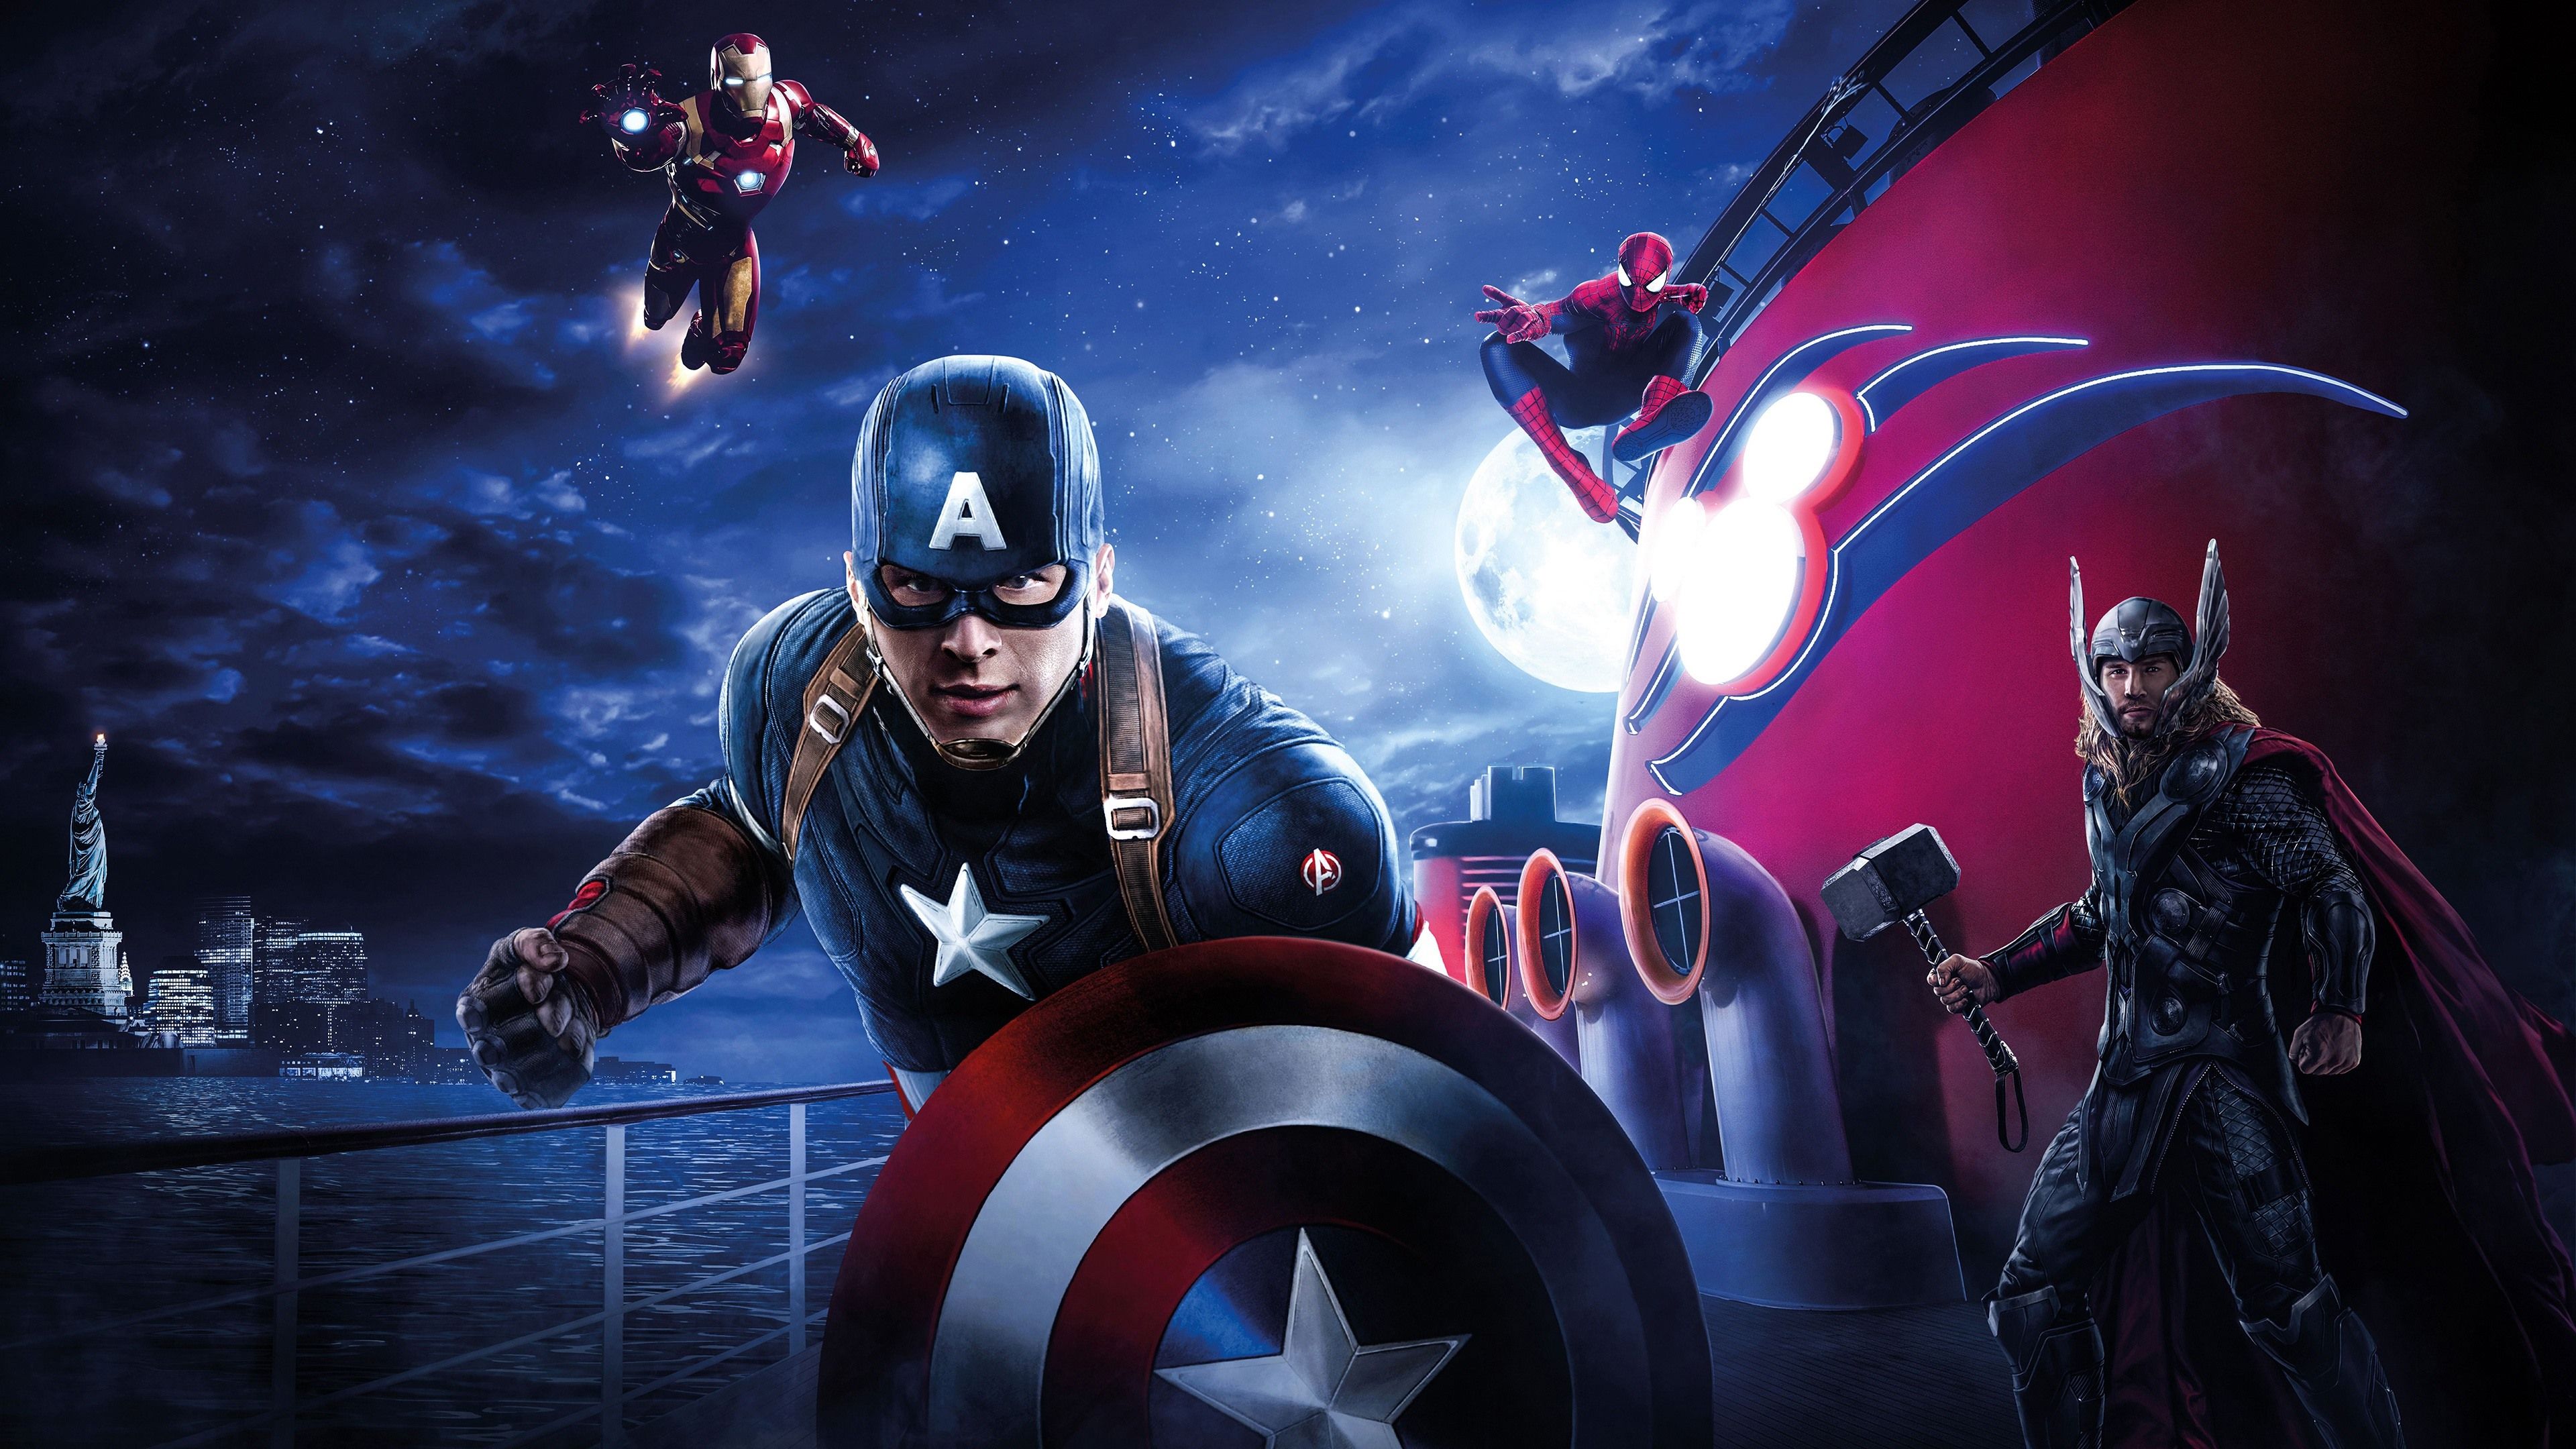 Wallpaper Avengers: Endgame, 2019 movie 3840x2160 UHD 4K Picture